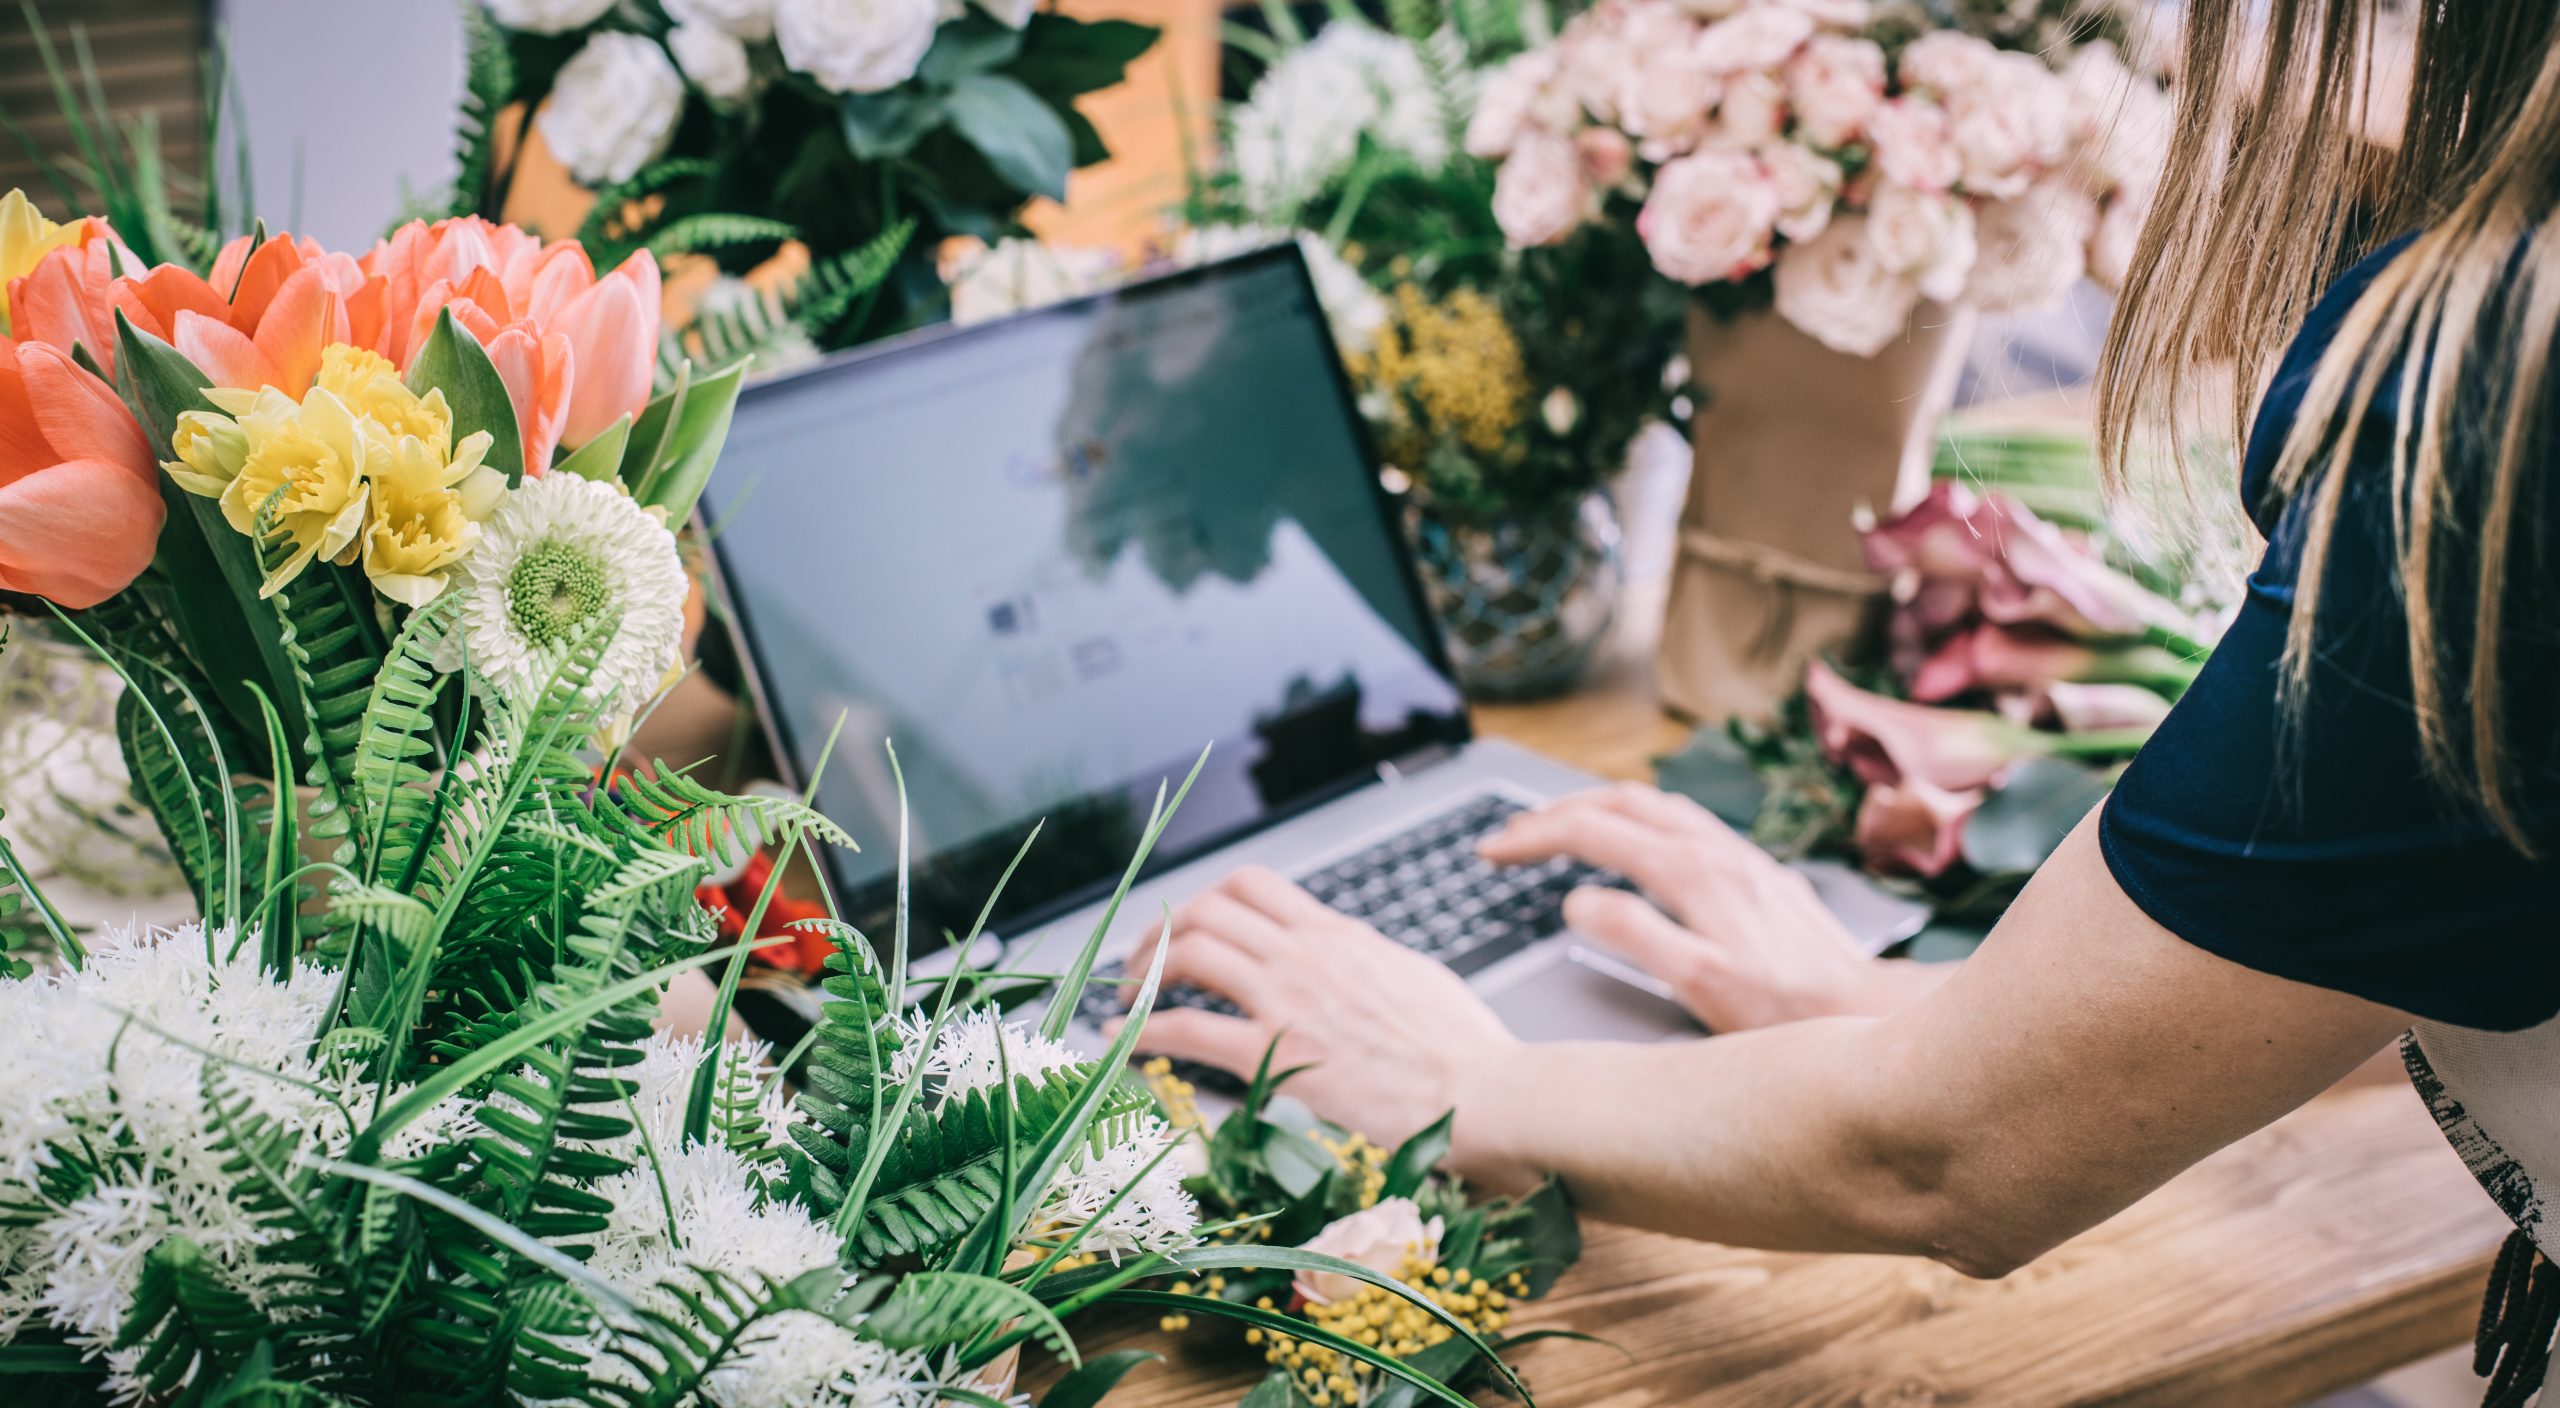 Venta de flores online: recomendaciones para comprar flores online